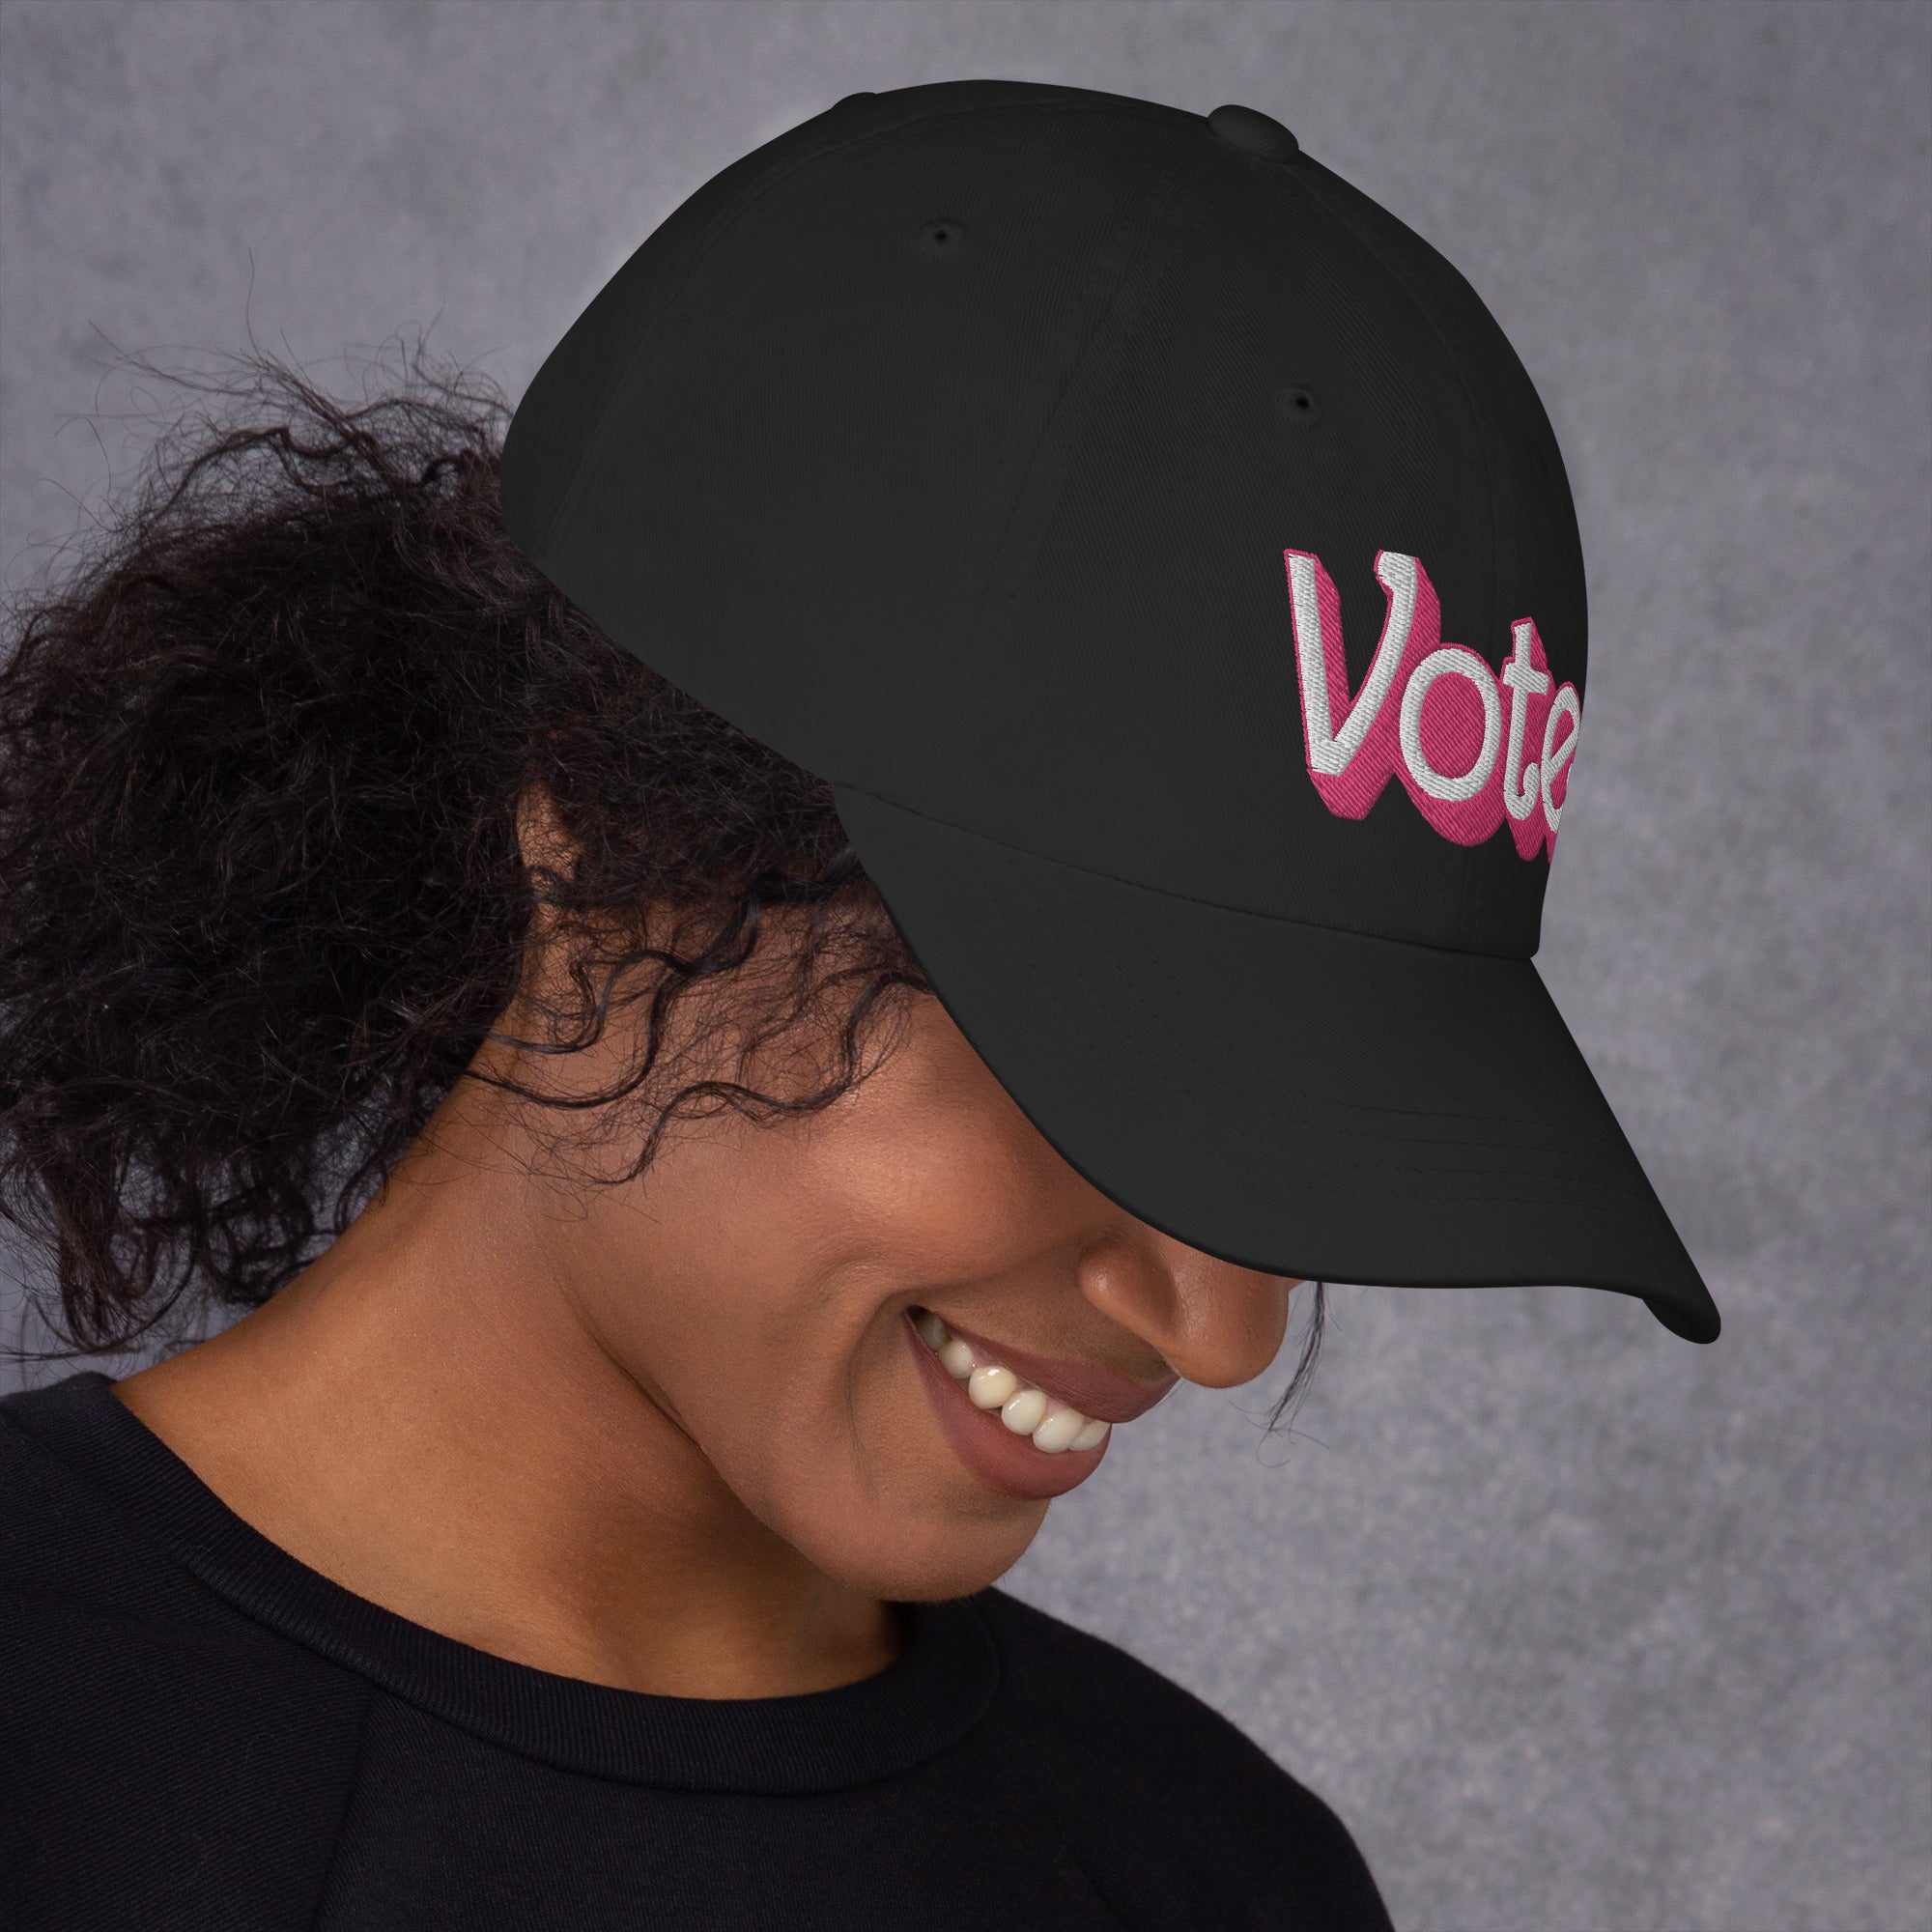 VOTE PINK- Dad hat